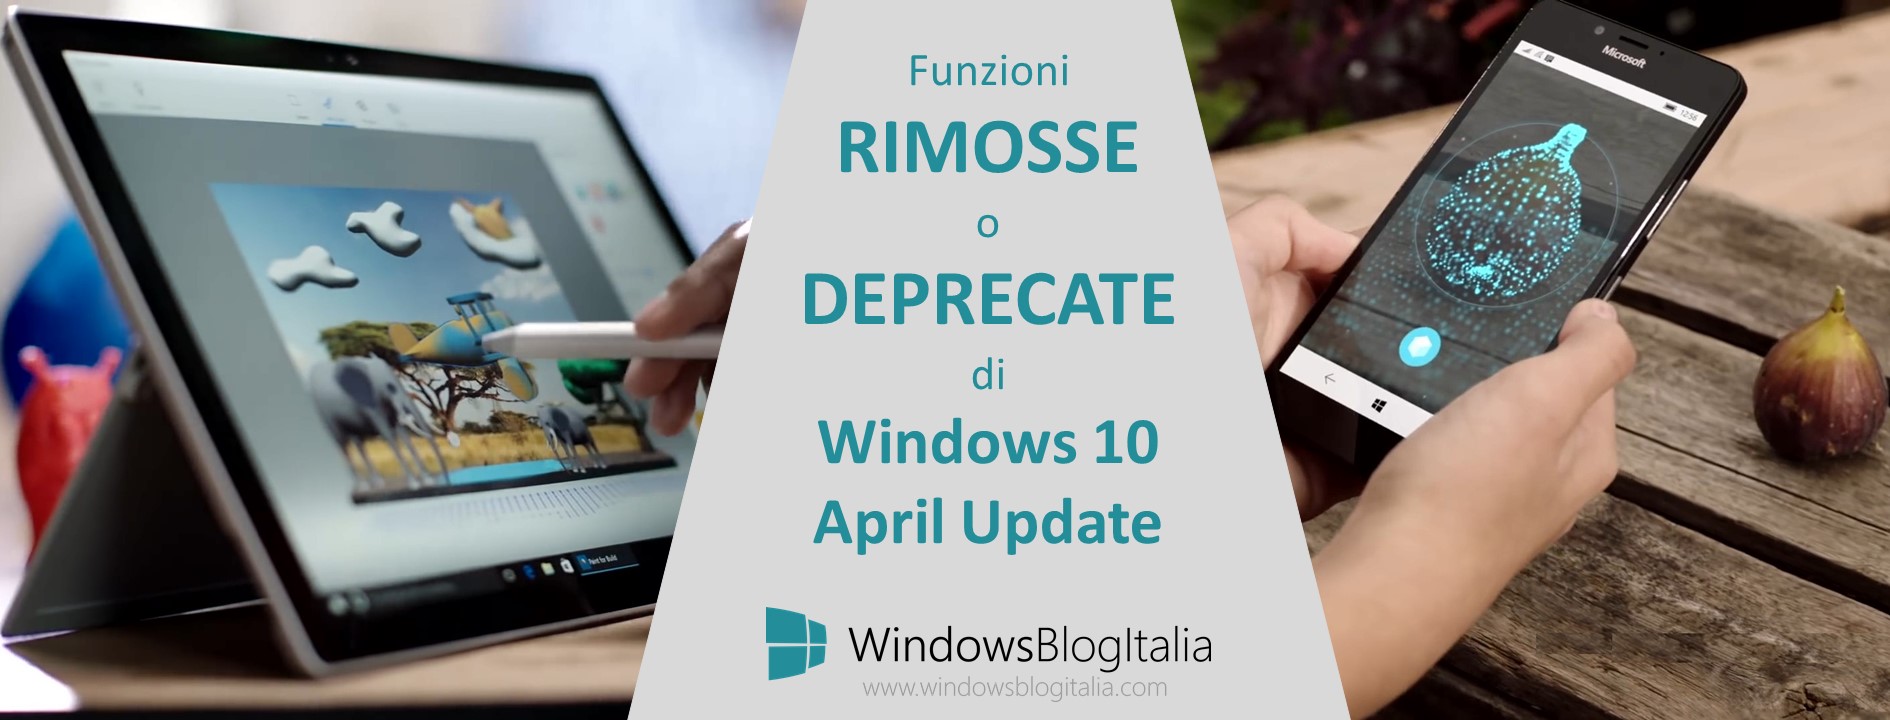 funzioni rimosse e deprecate da Windows 10 April Update